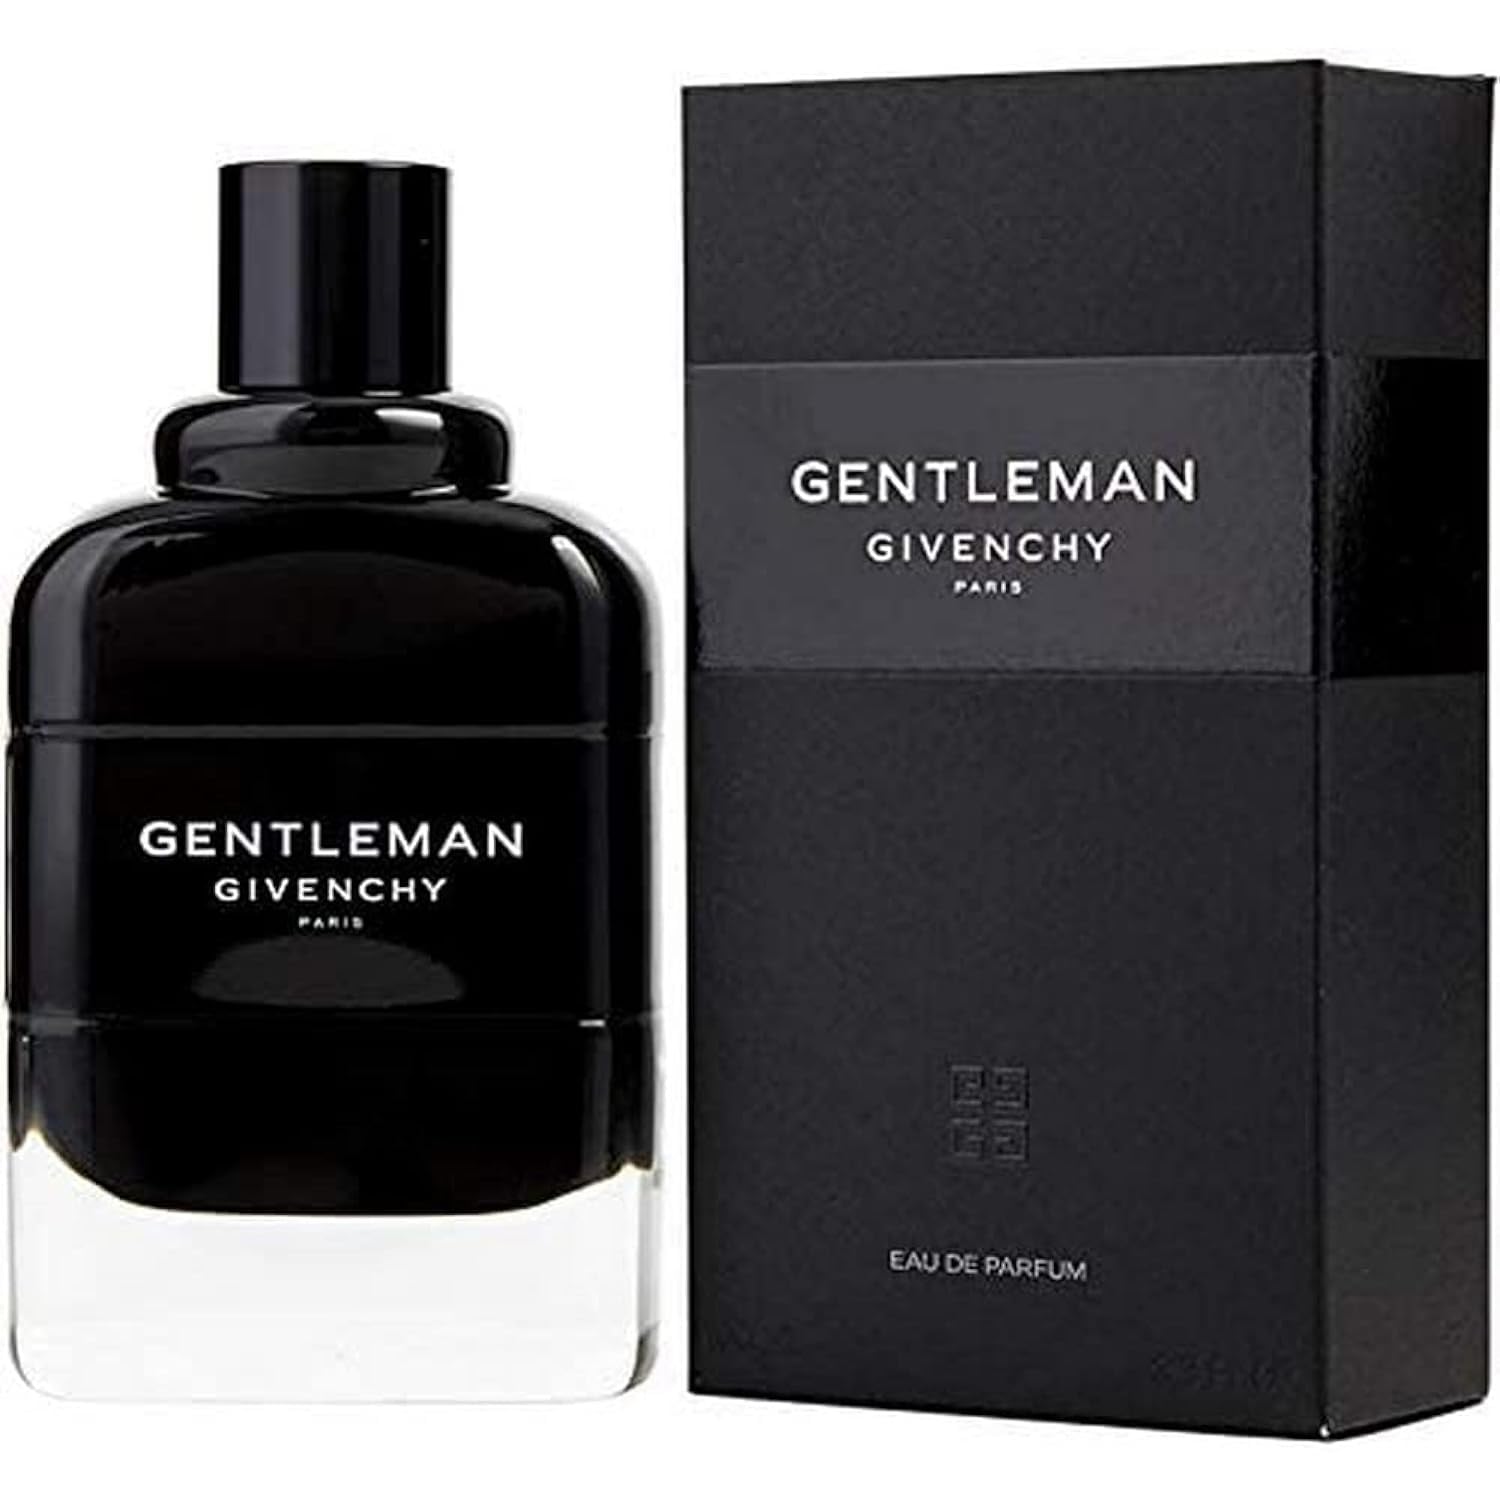 GIVENCHY GENTLEMAN Eau de Parfum, 100 ml.